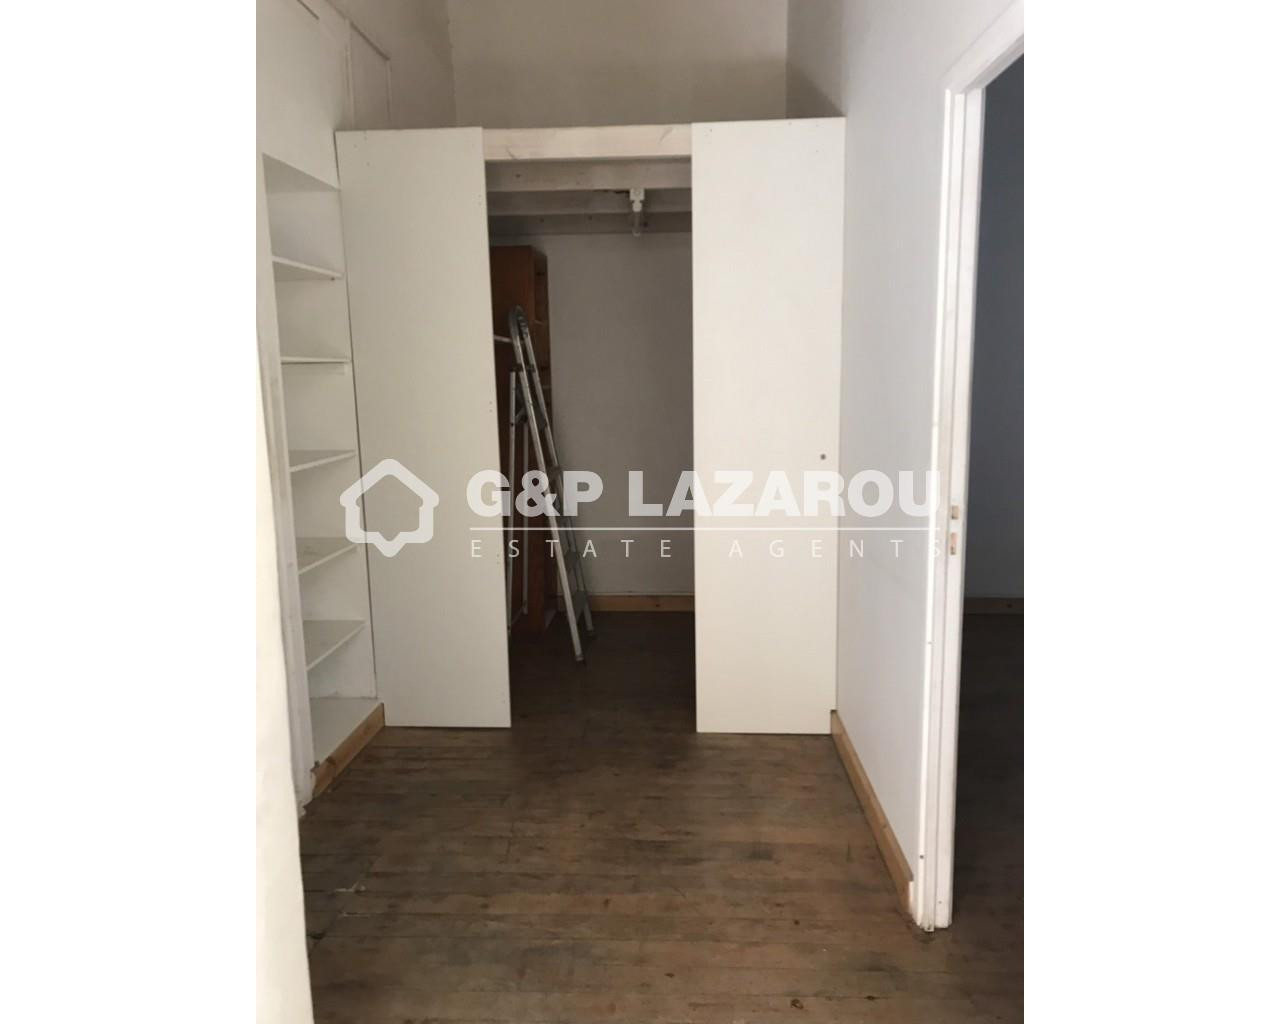 6+ Bedroom House for Sale in Limassol – Katholiki